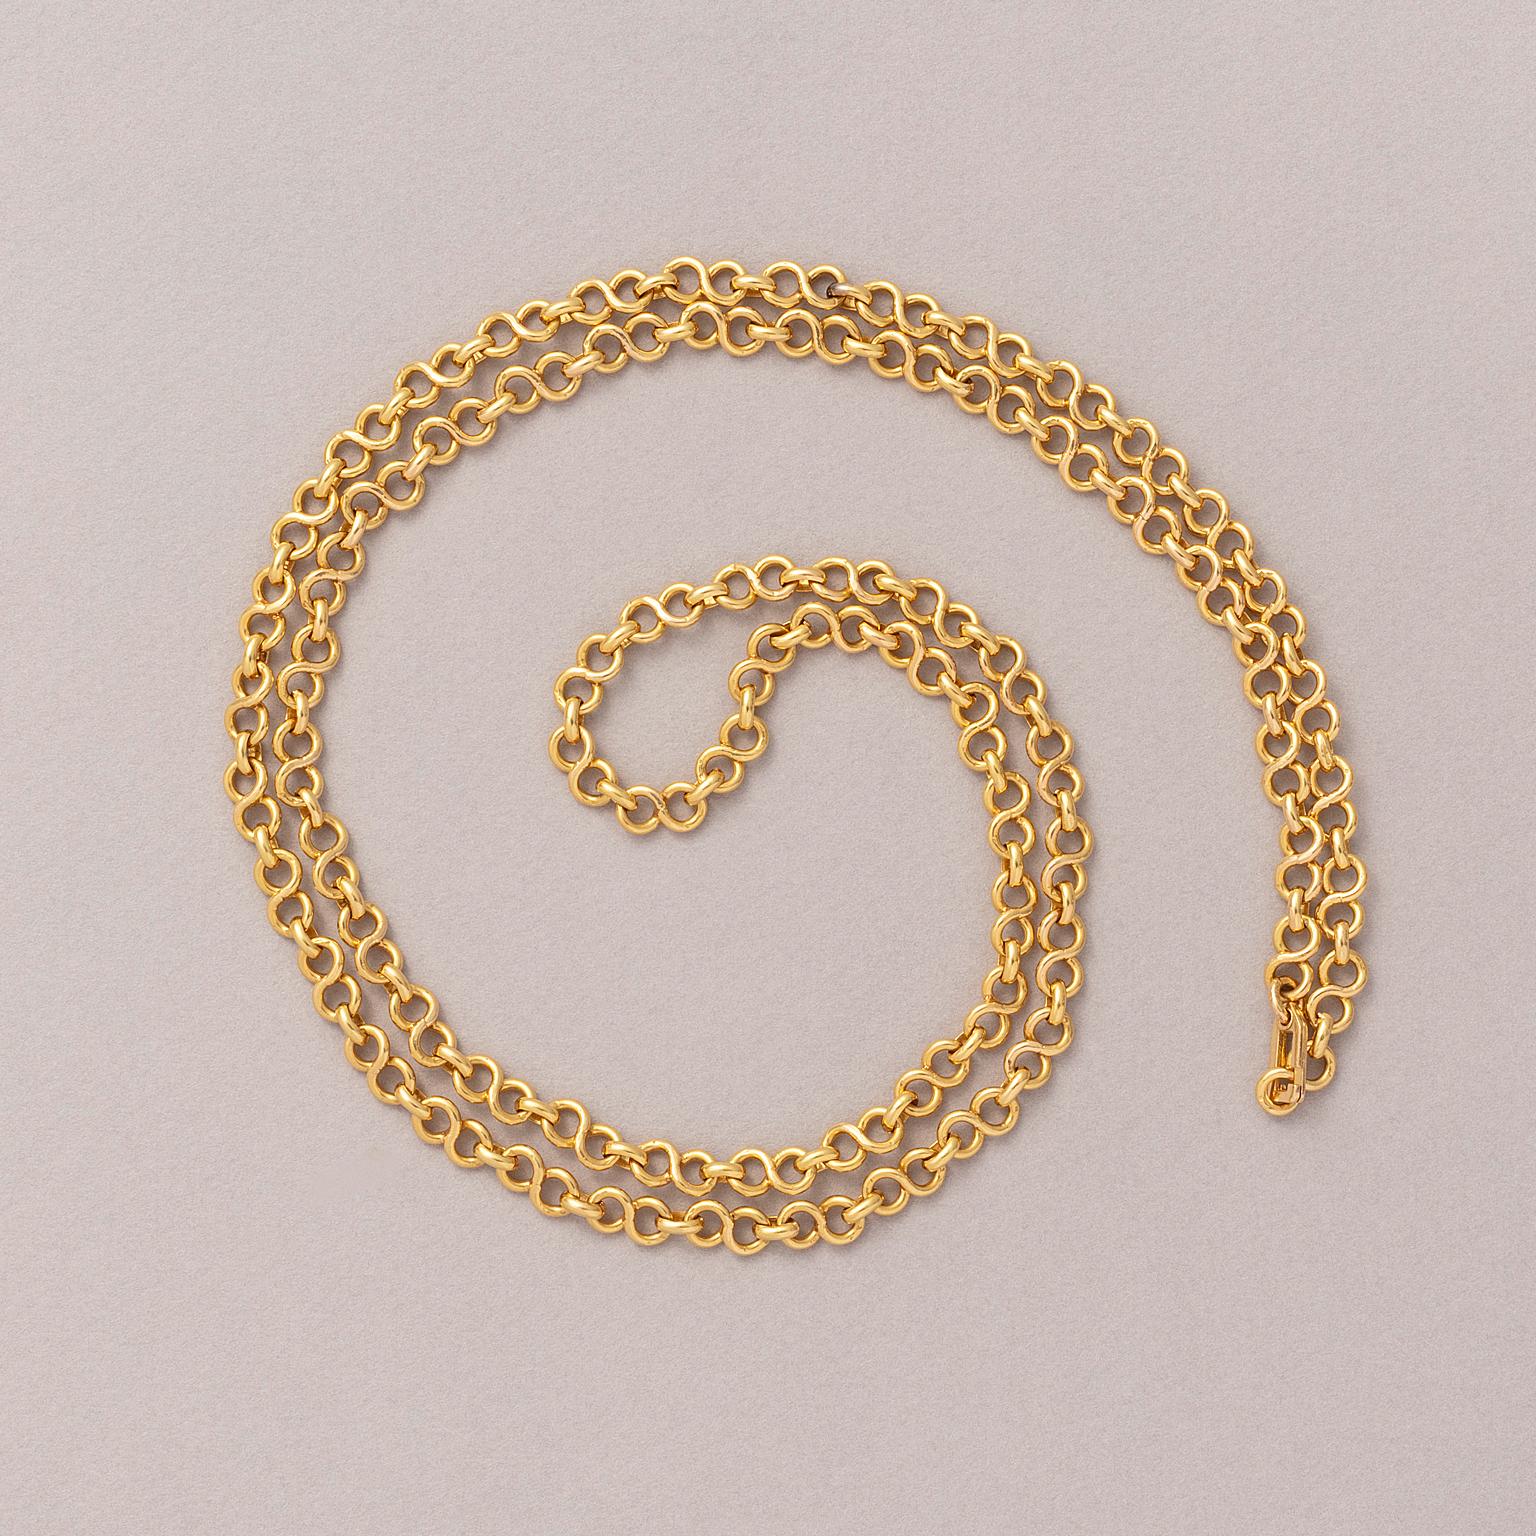 Une longue chaîne de 18 carats avec des maillons infinis.

poids : 68,45 grammes
longueur : 87 cm